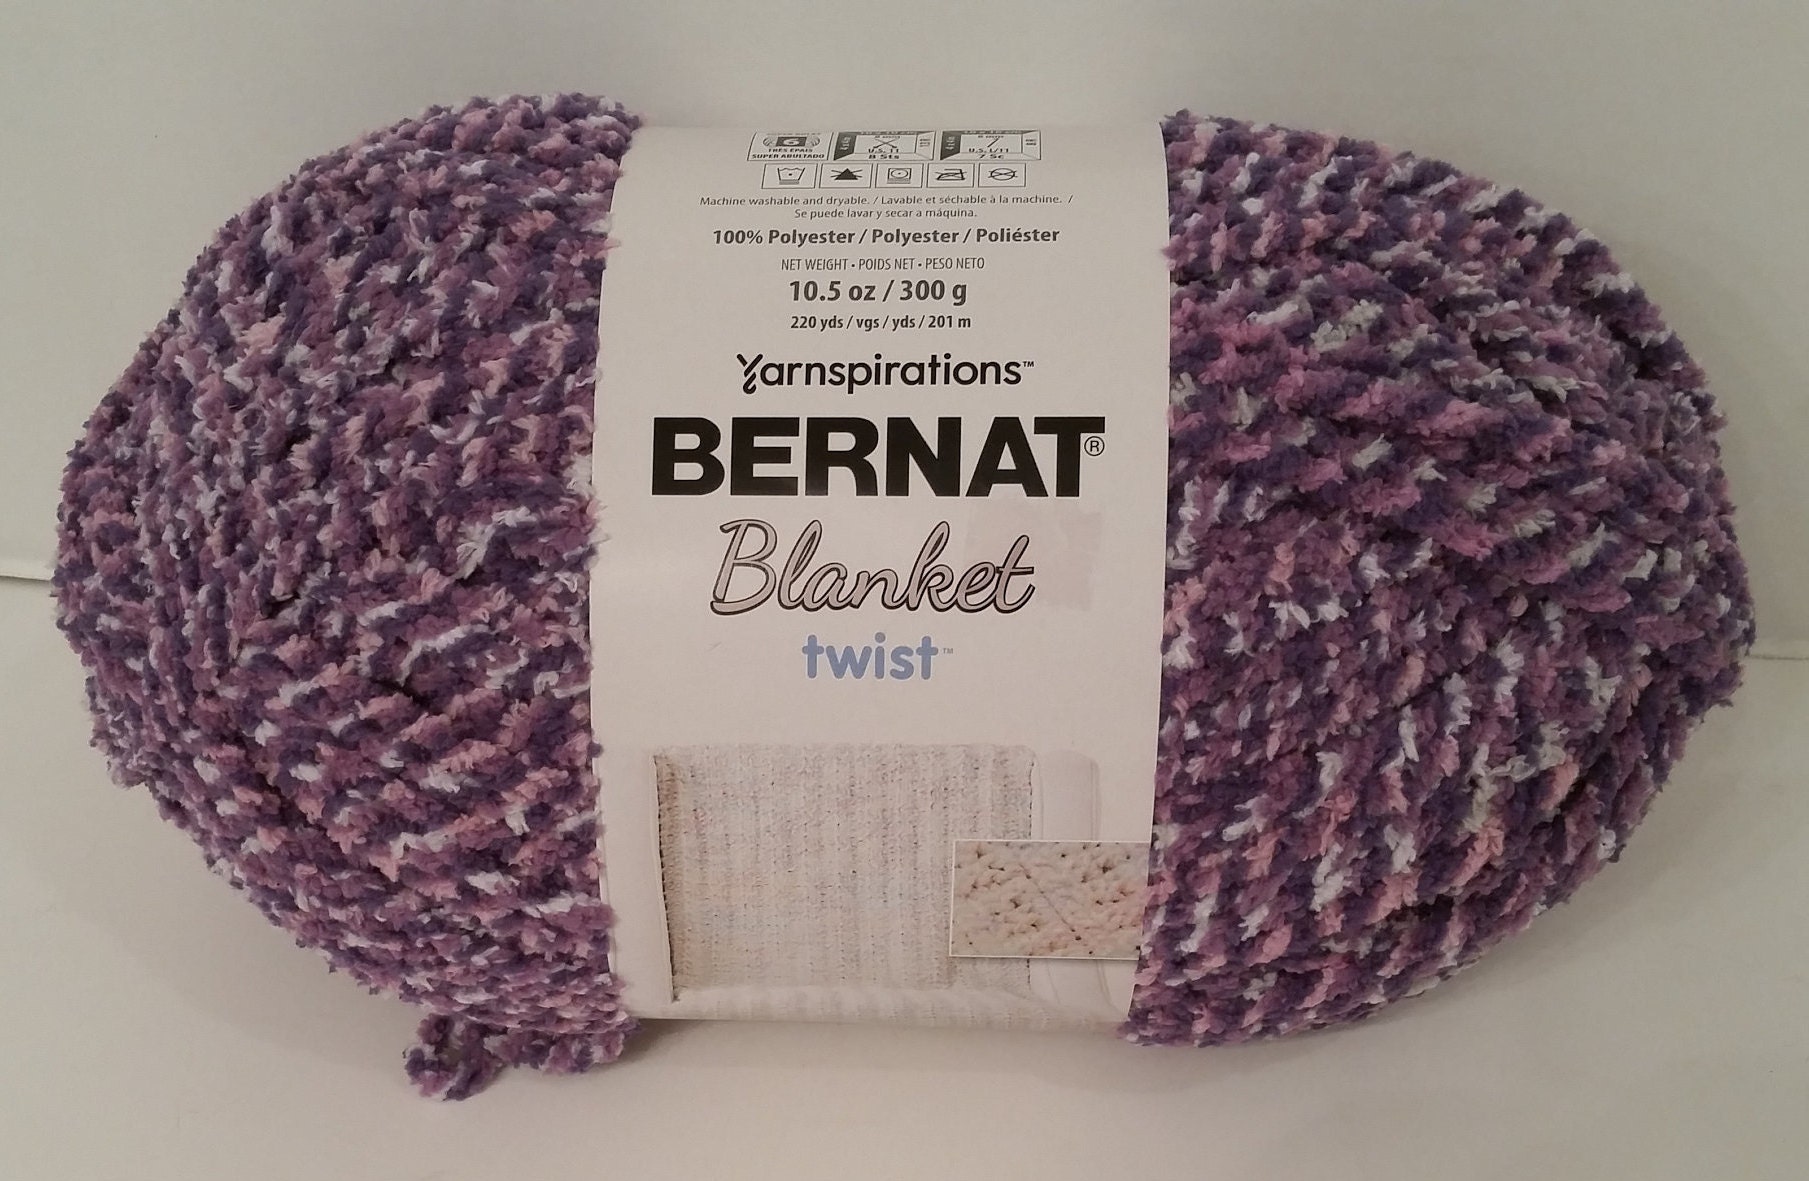 1 Skein Bernat Blanket Yarn Country Blue 2016-02-011 